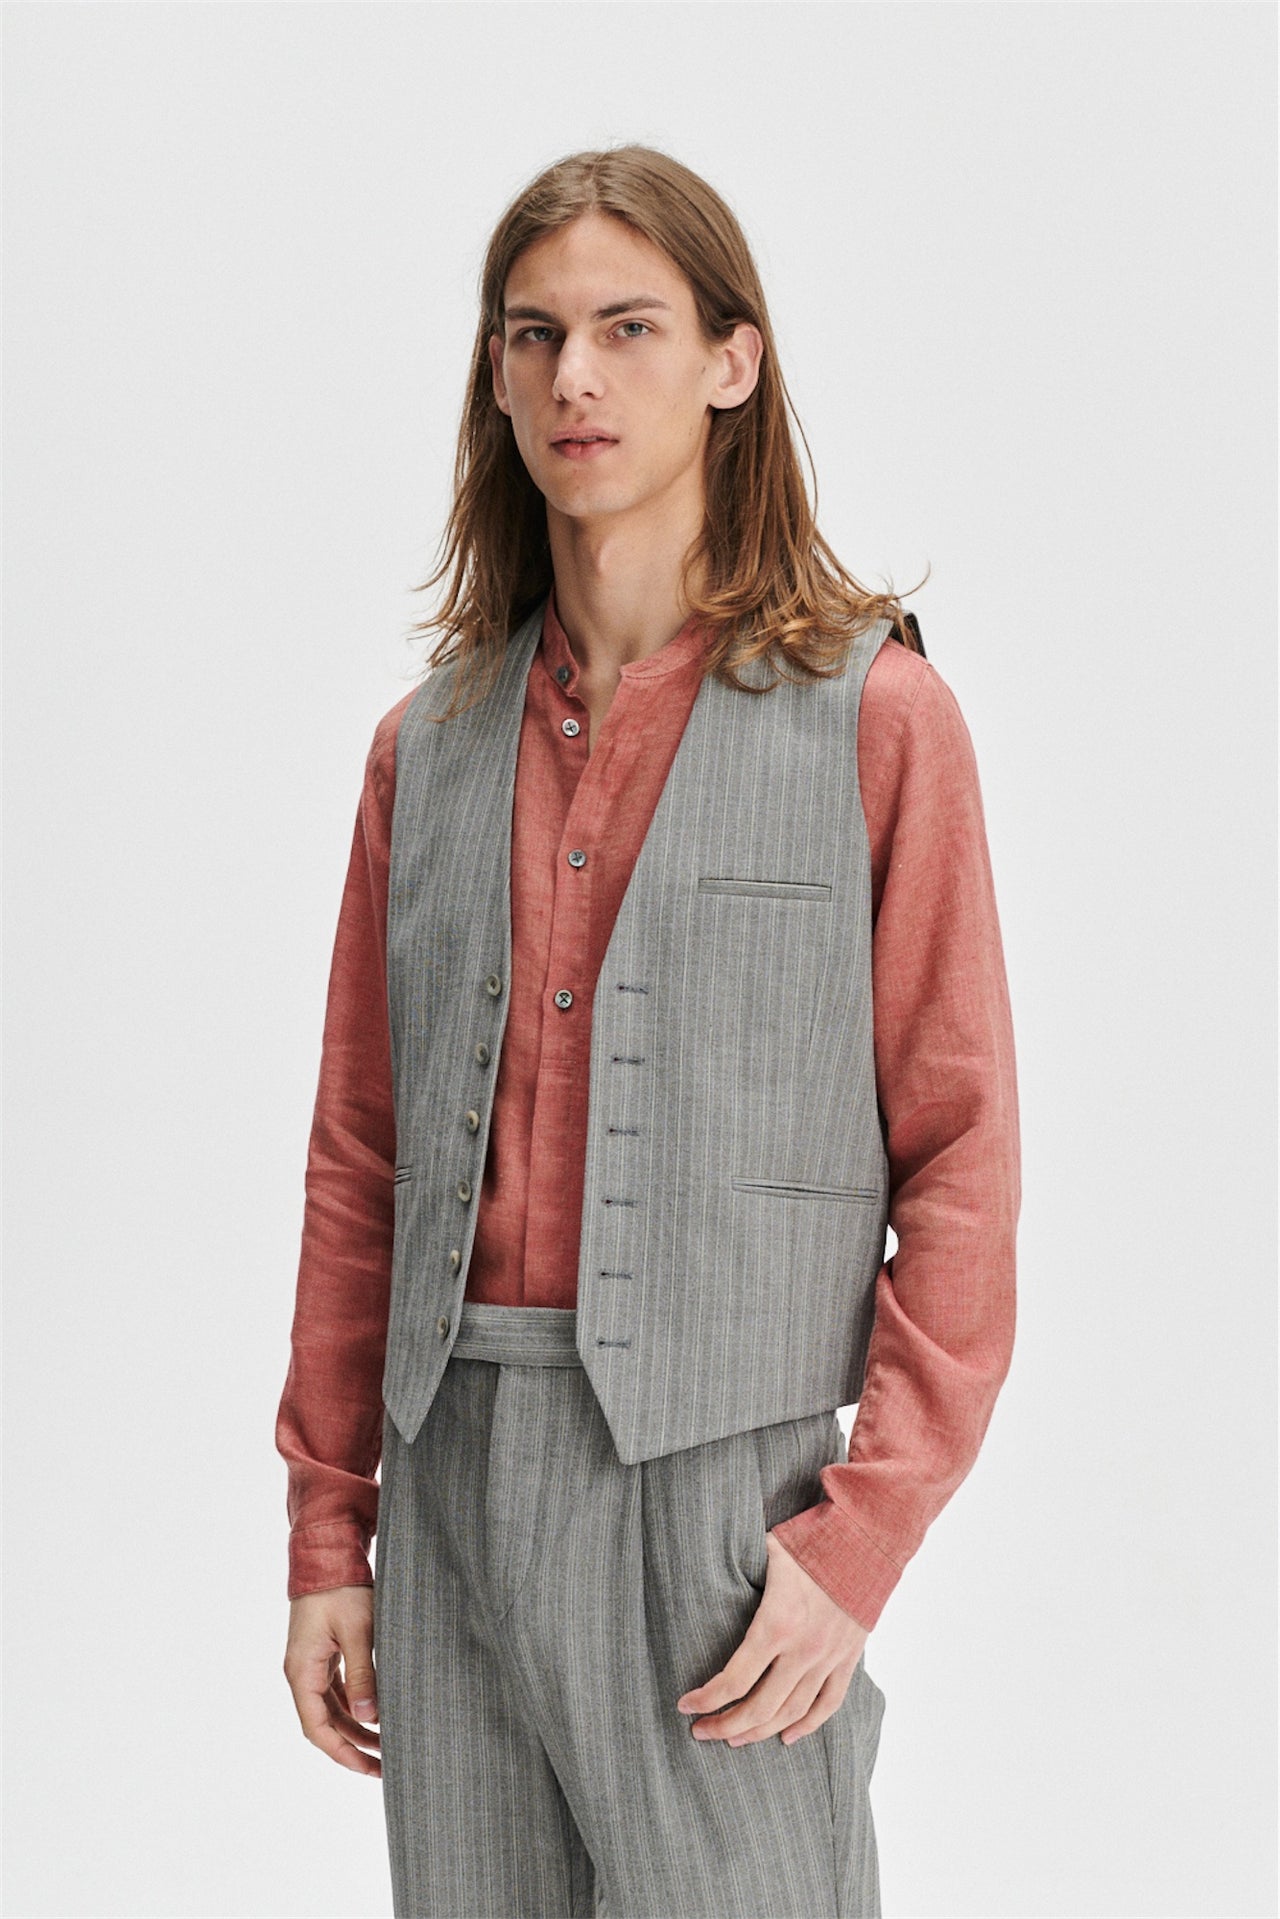 Vest in a Grey Herringbone and Subtle Blue Stripe Fine Italian Cotton Crepe by Bonotto